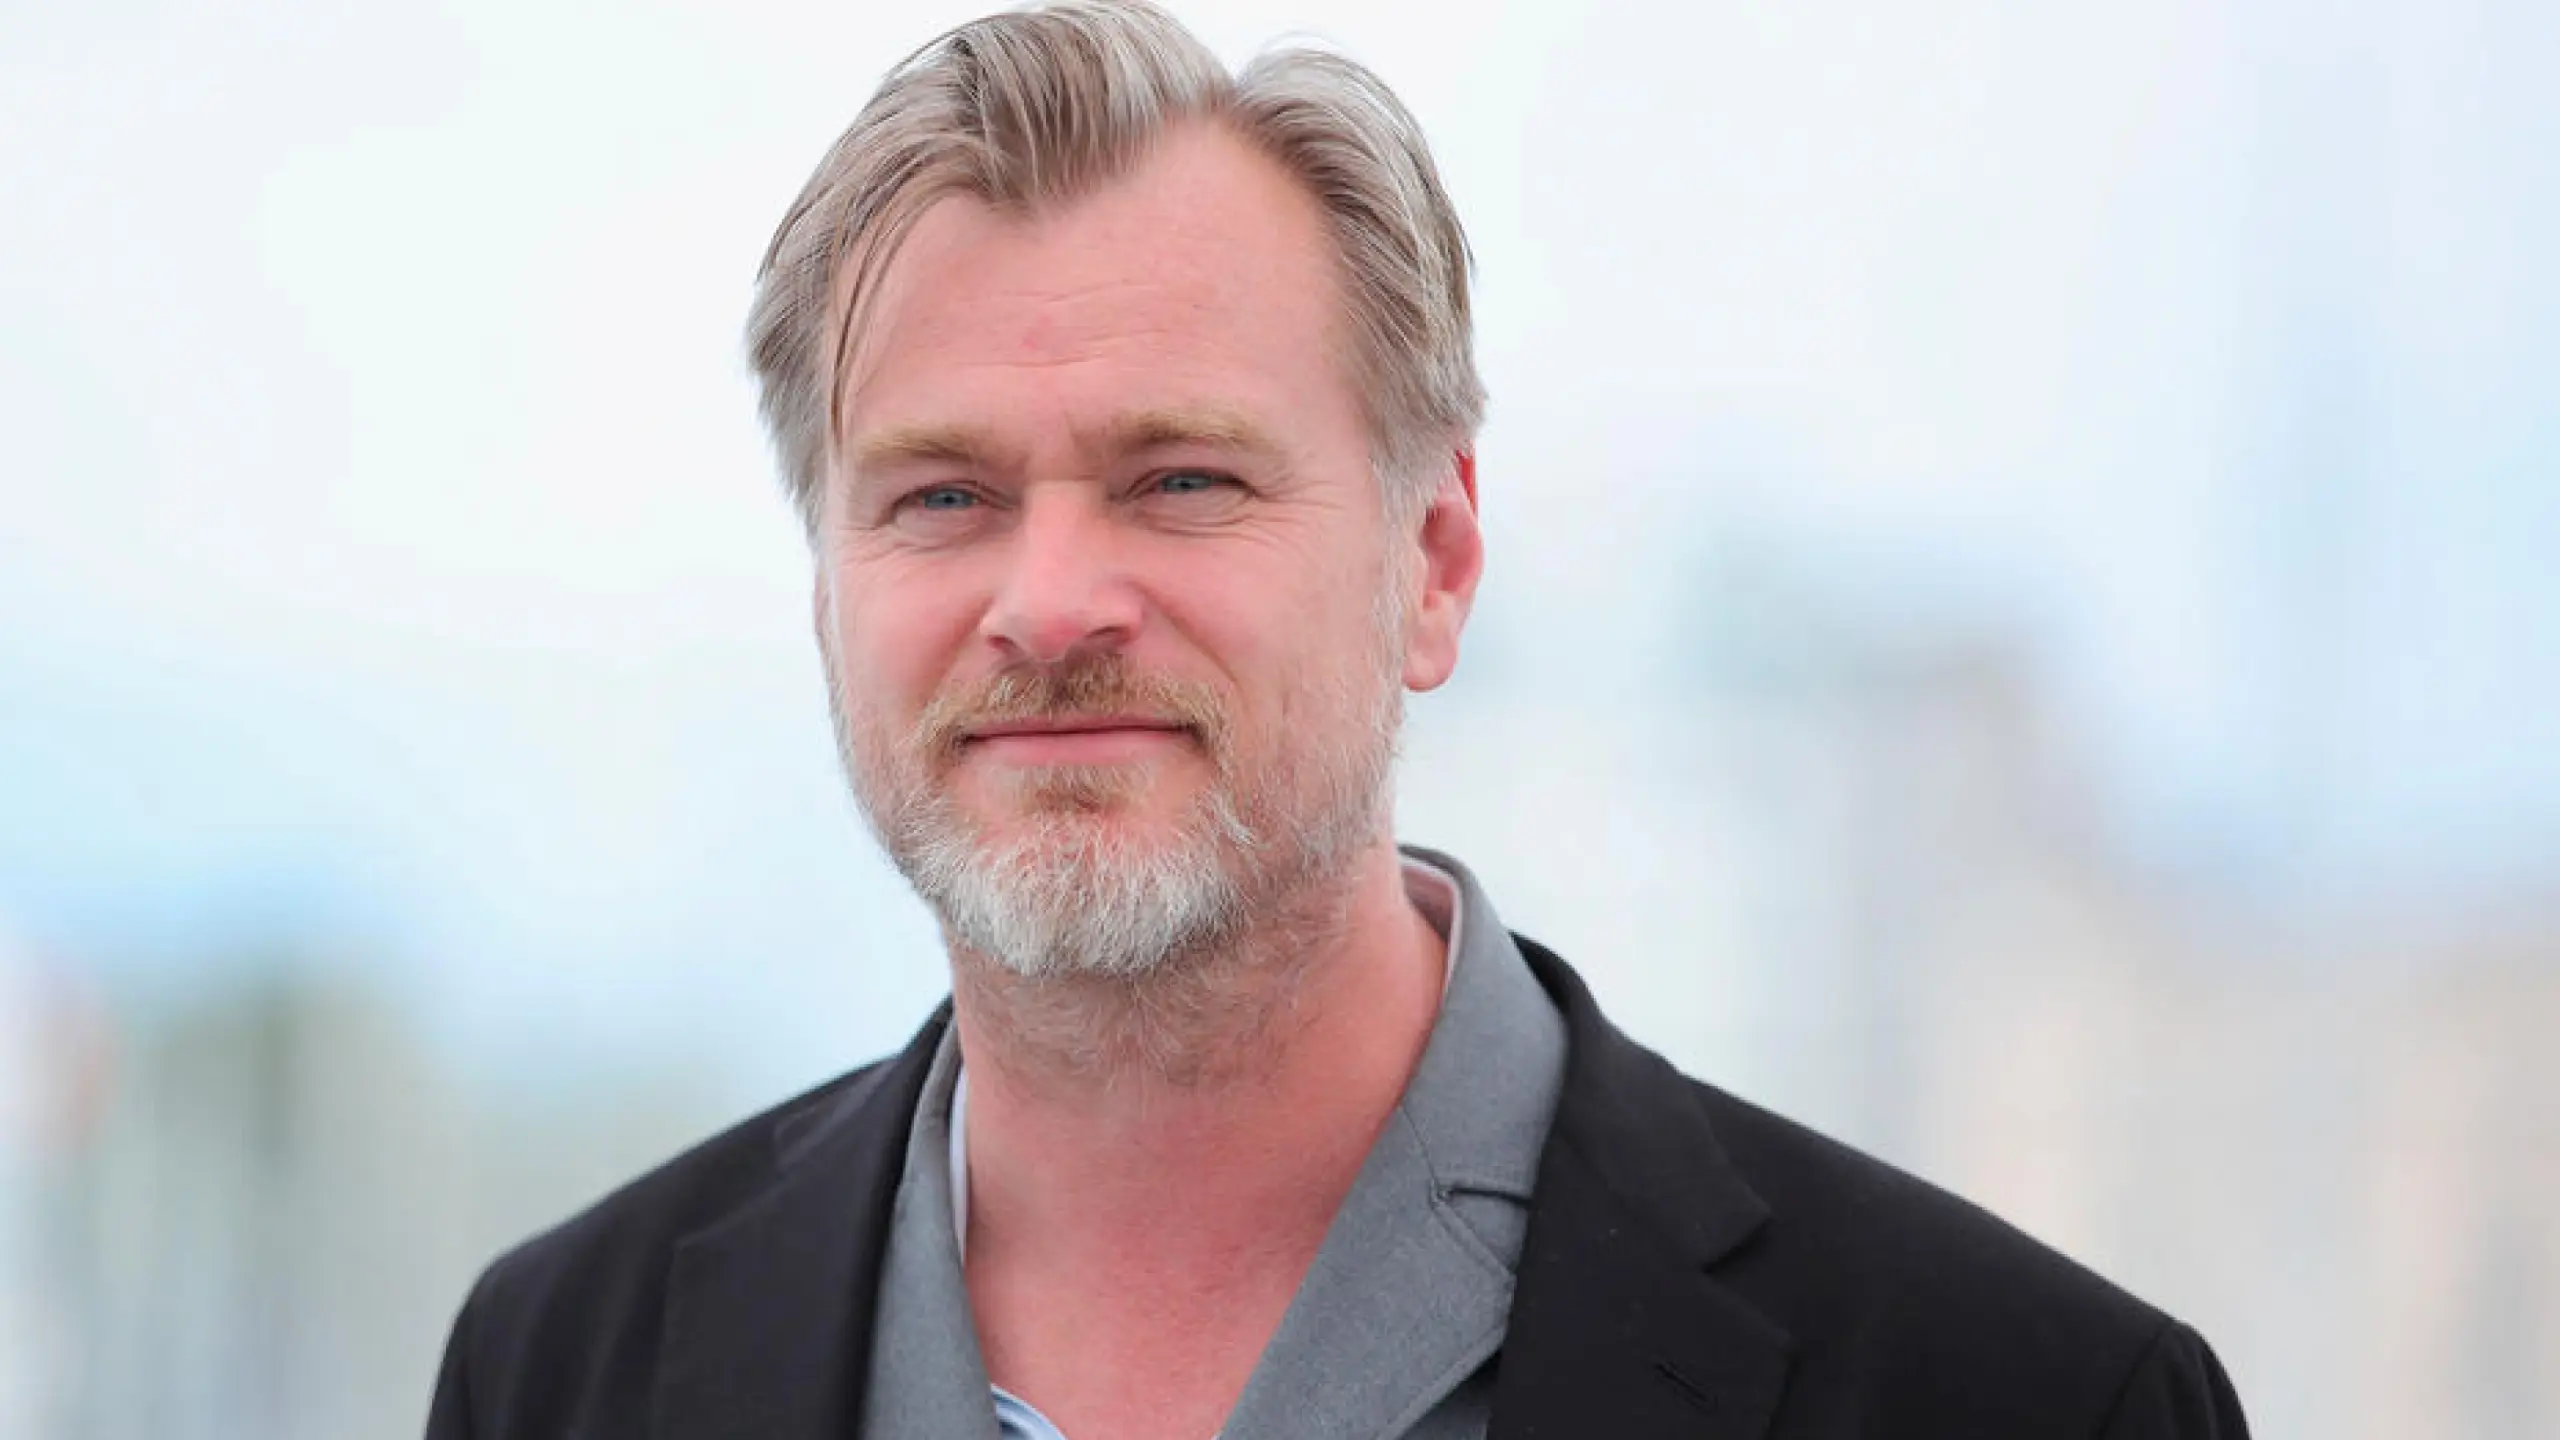 Alle Filme von Regisseur Christopher Nolan im Ranking